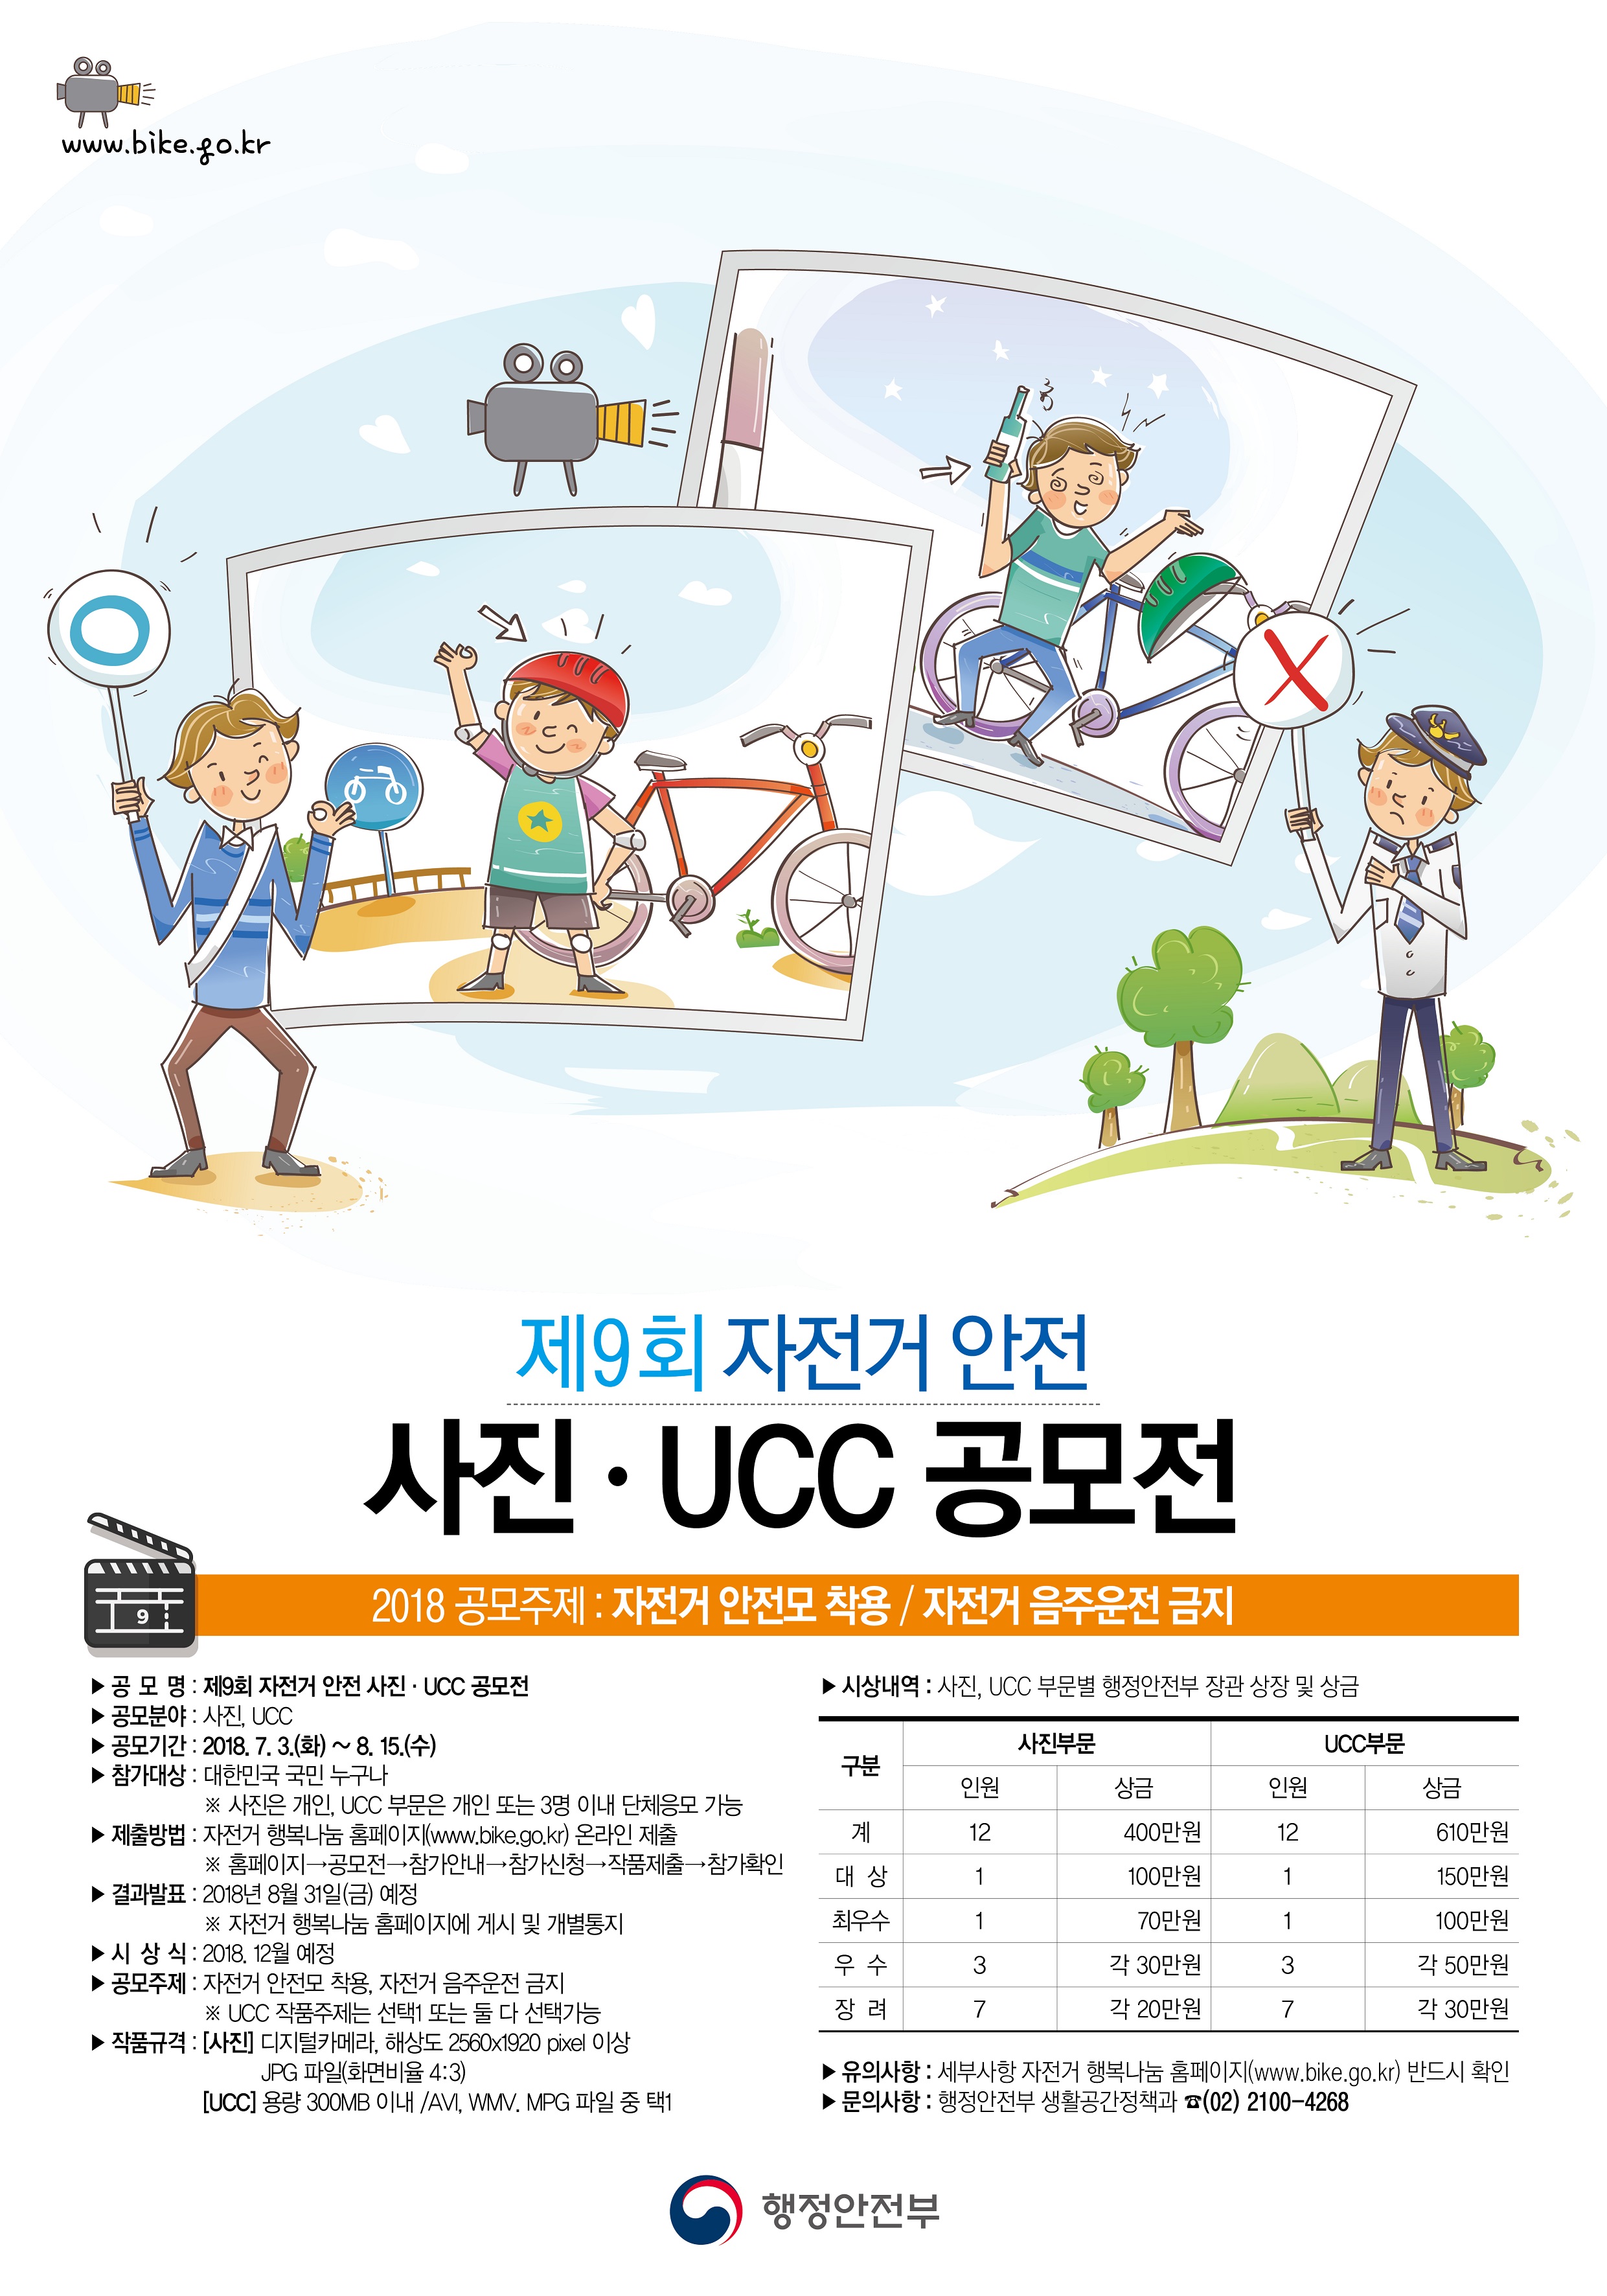 『제9회 자전거 안전 사진·UCC 공모전』개최 안내의 2번째 이미지